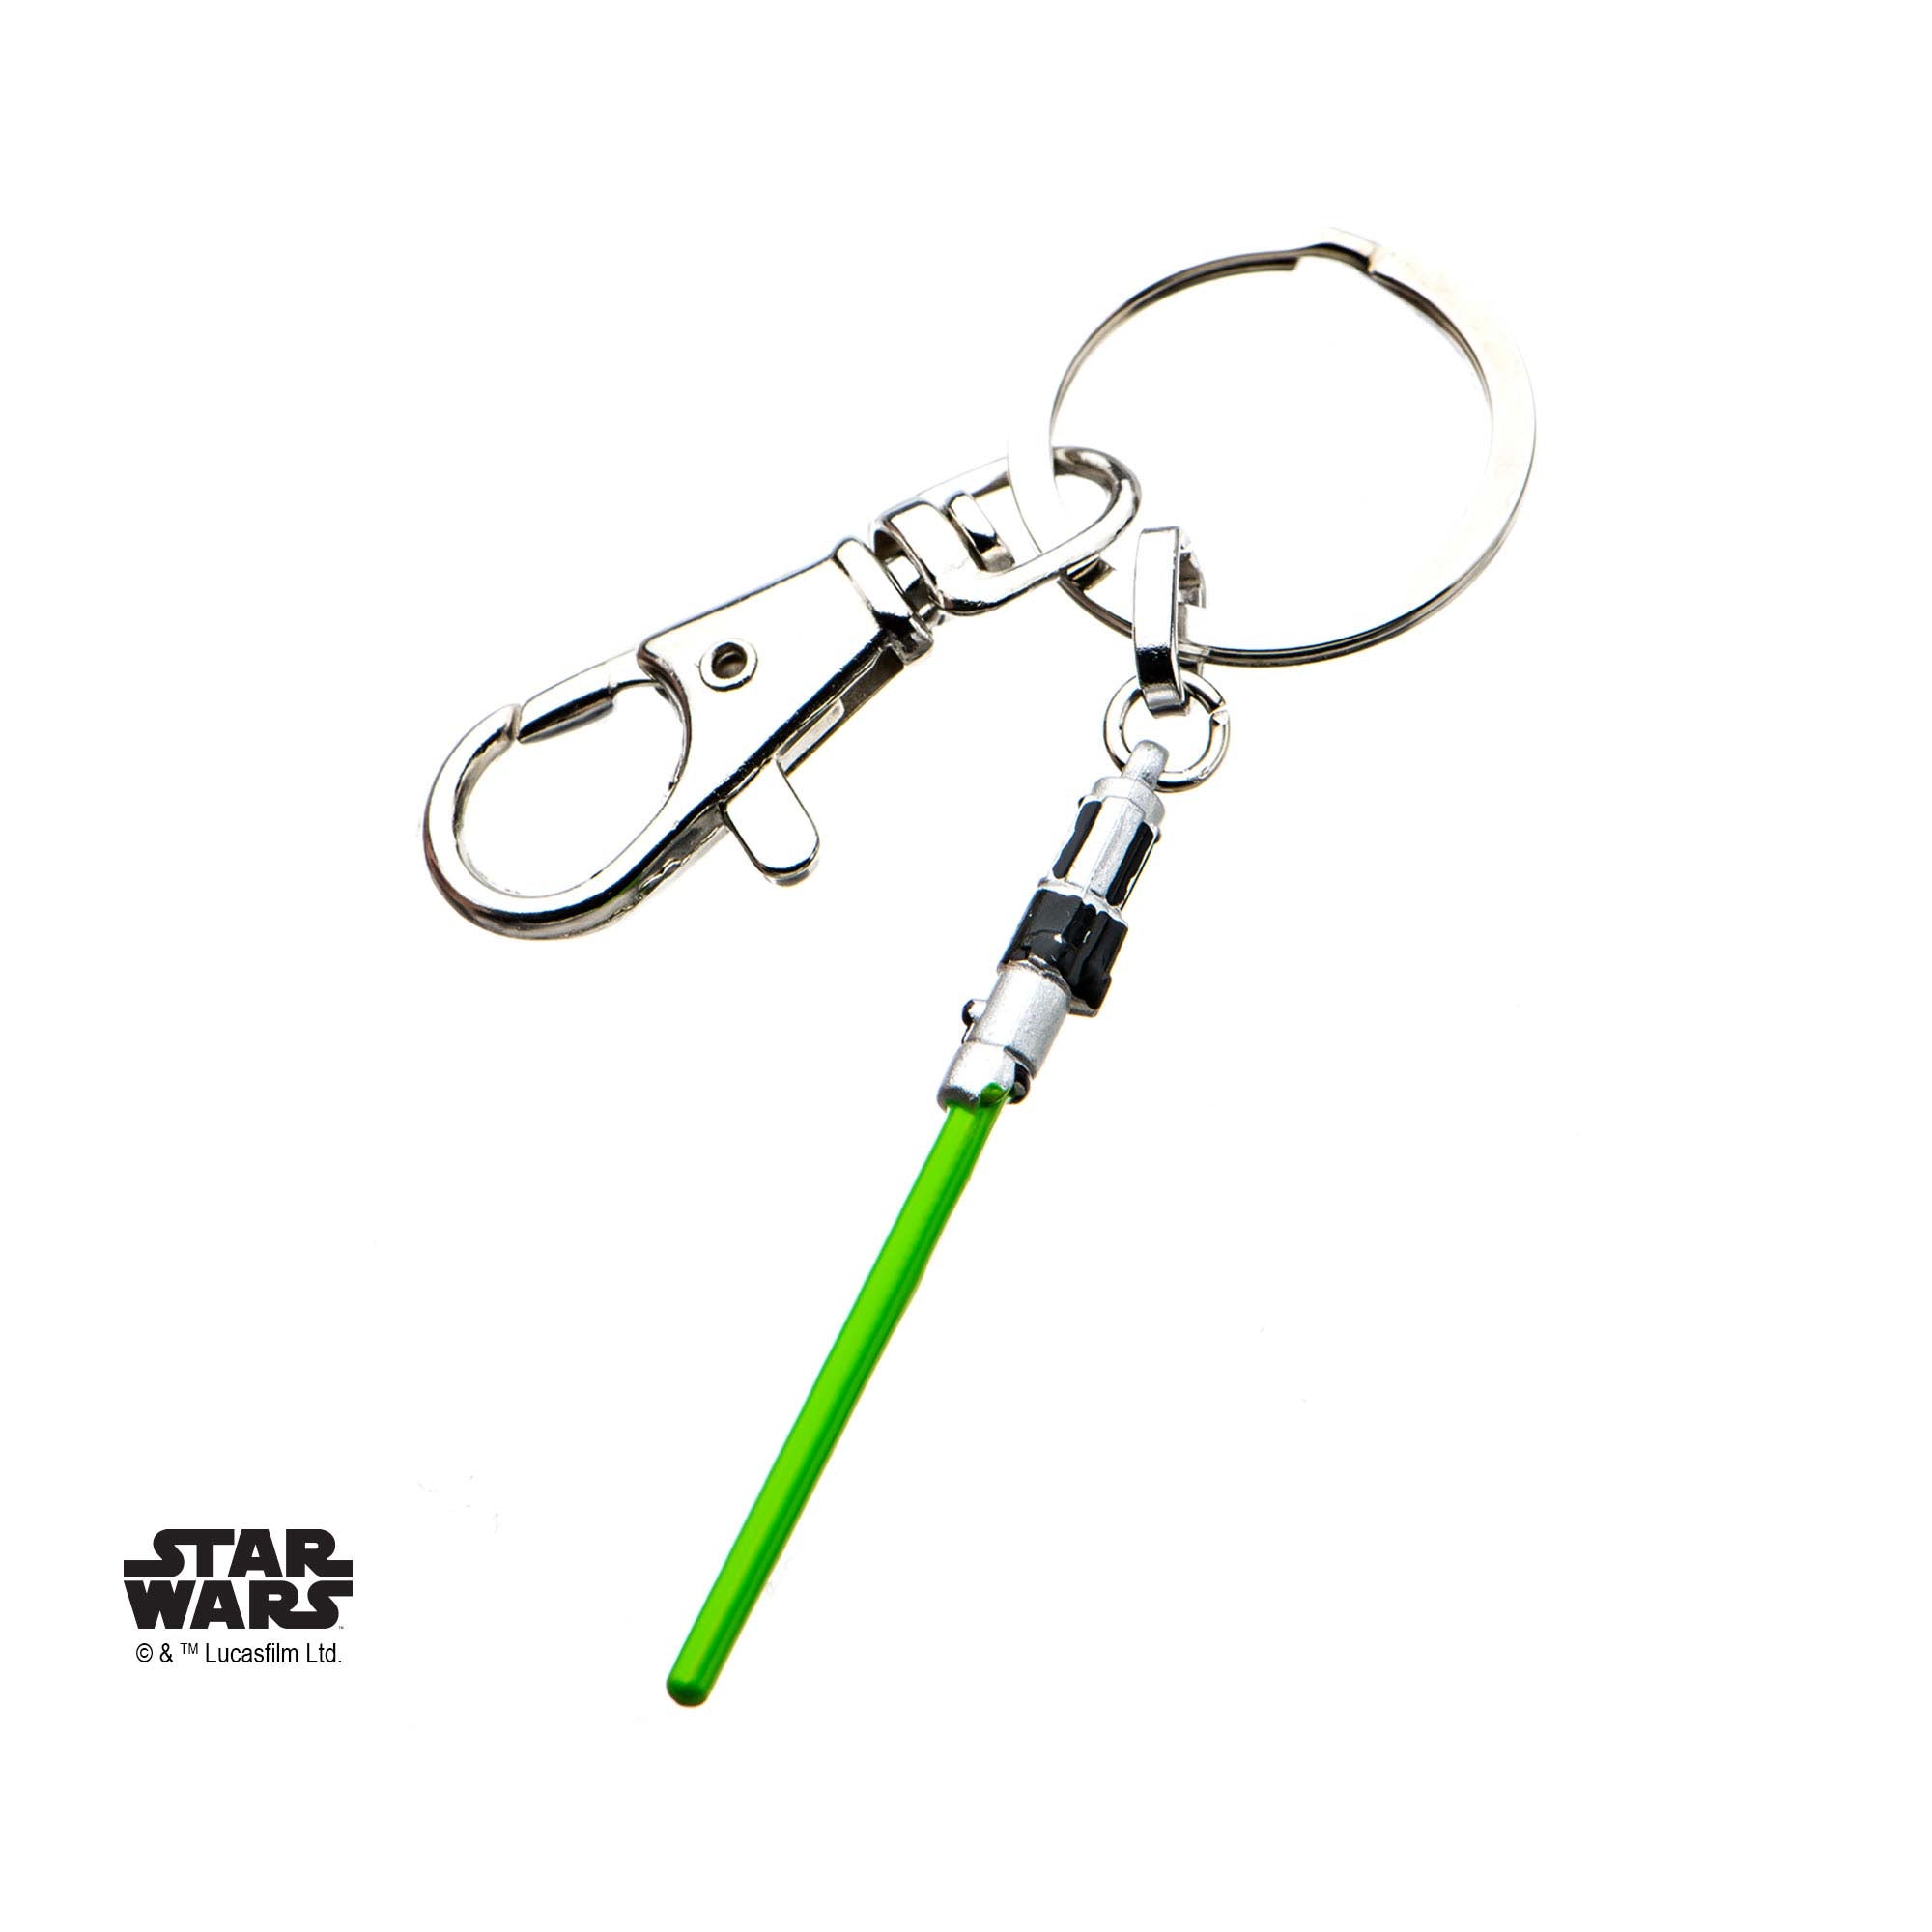 Star Wars Yoda Lightsaber Key Chain